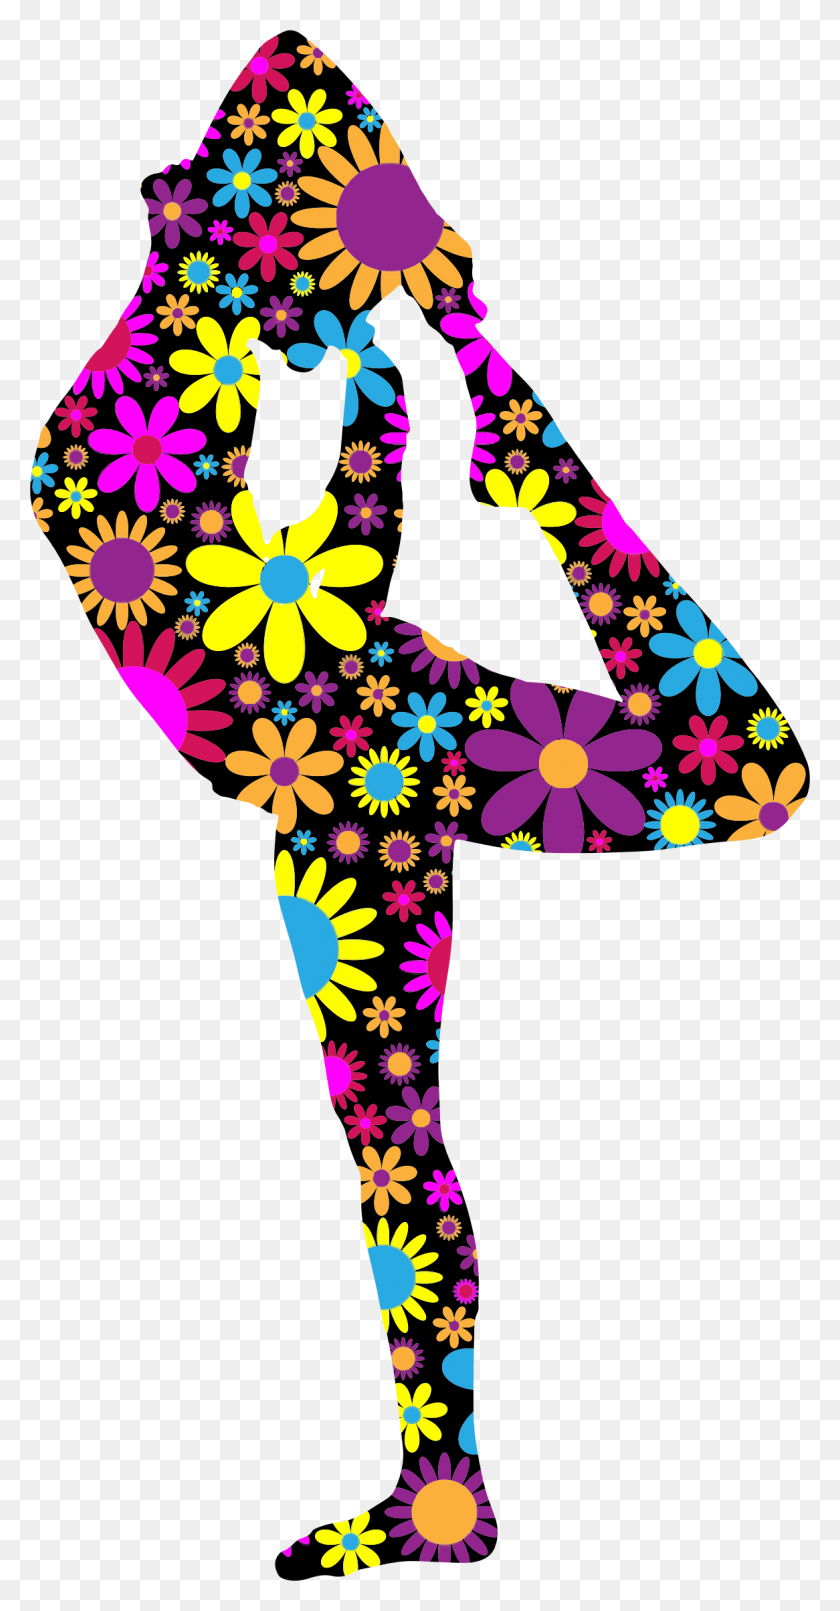 1166x2320 Descargar Png Floral Mujer Yoga Pose Silueta 3 Por Gdj Floral Yoga Pose Arte Floral, Gráficos, Diseño Floral Hd Png